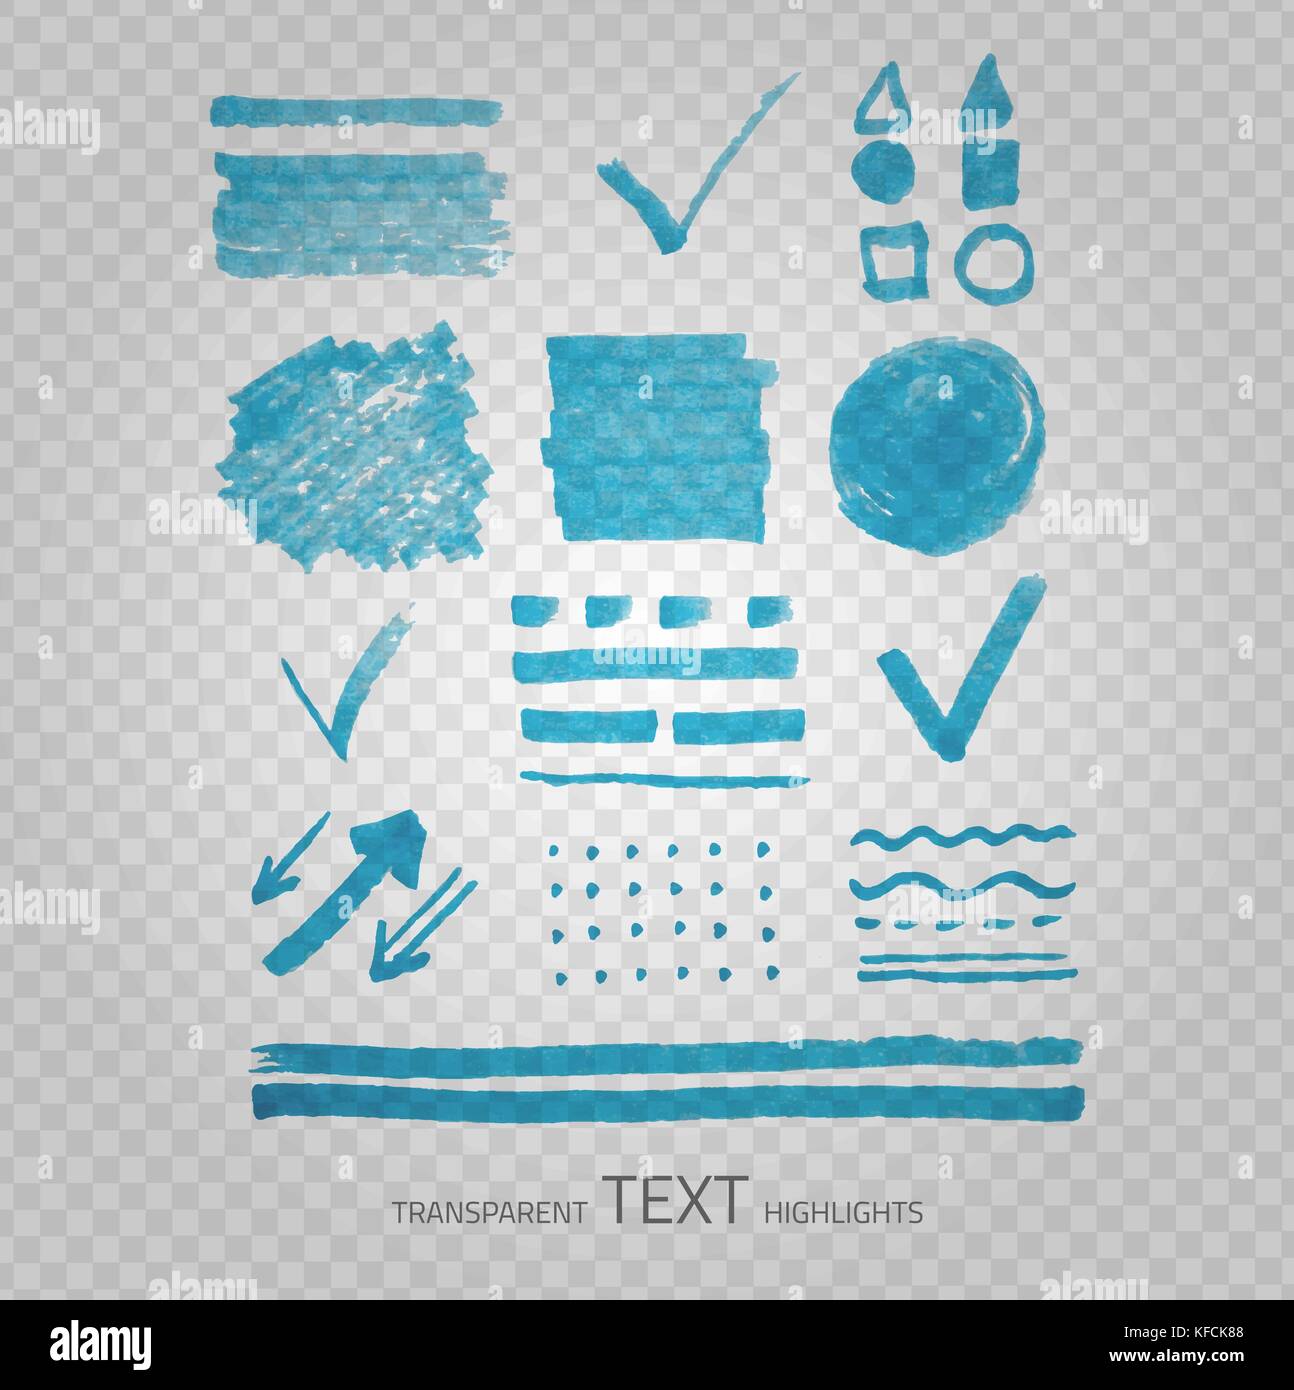 Vektor Sammlung von textmarker Marker Punkte und Zeichen, Hand gezeichnet dekorative Symbole, transparente Elemente auf graues Raster Stock Vektor